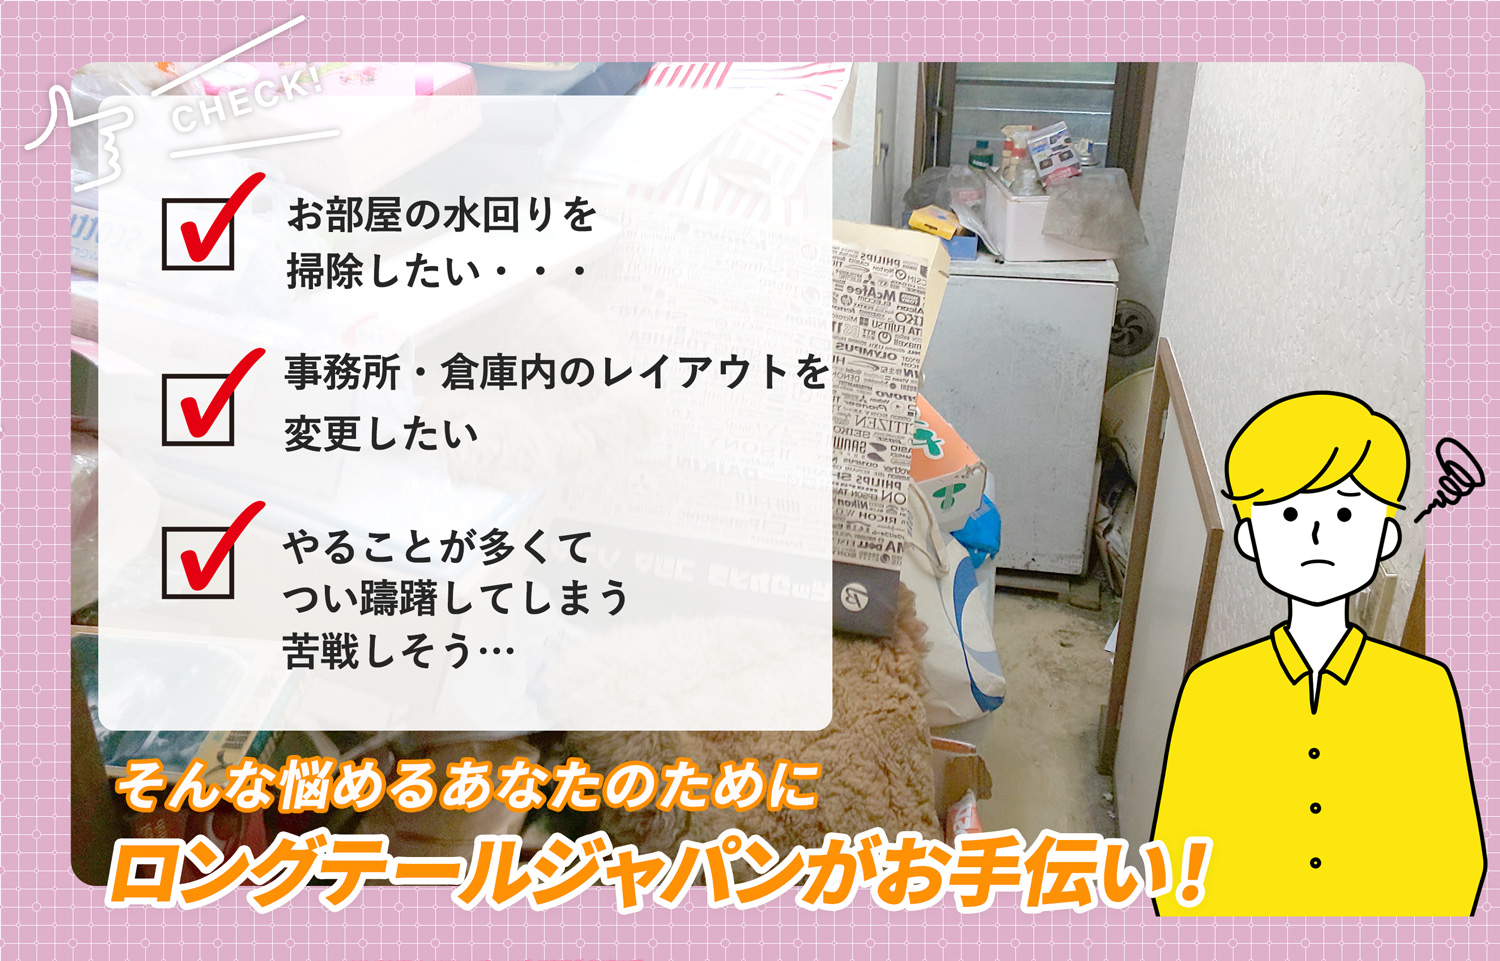 上野原市でお部屋の中から店舗、事務所、倉庫まで自分達で片付けられない場合はお部屋の片付け隊がやらせていただきます。